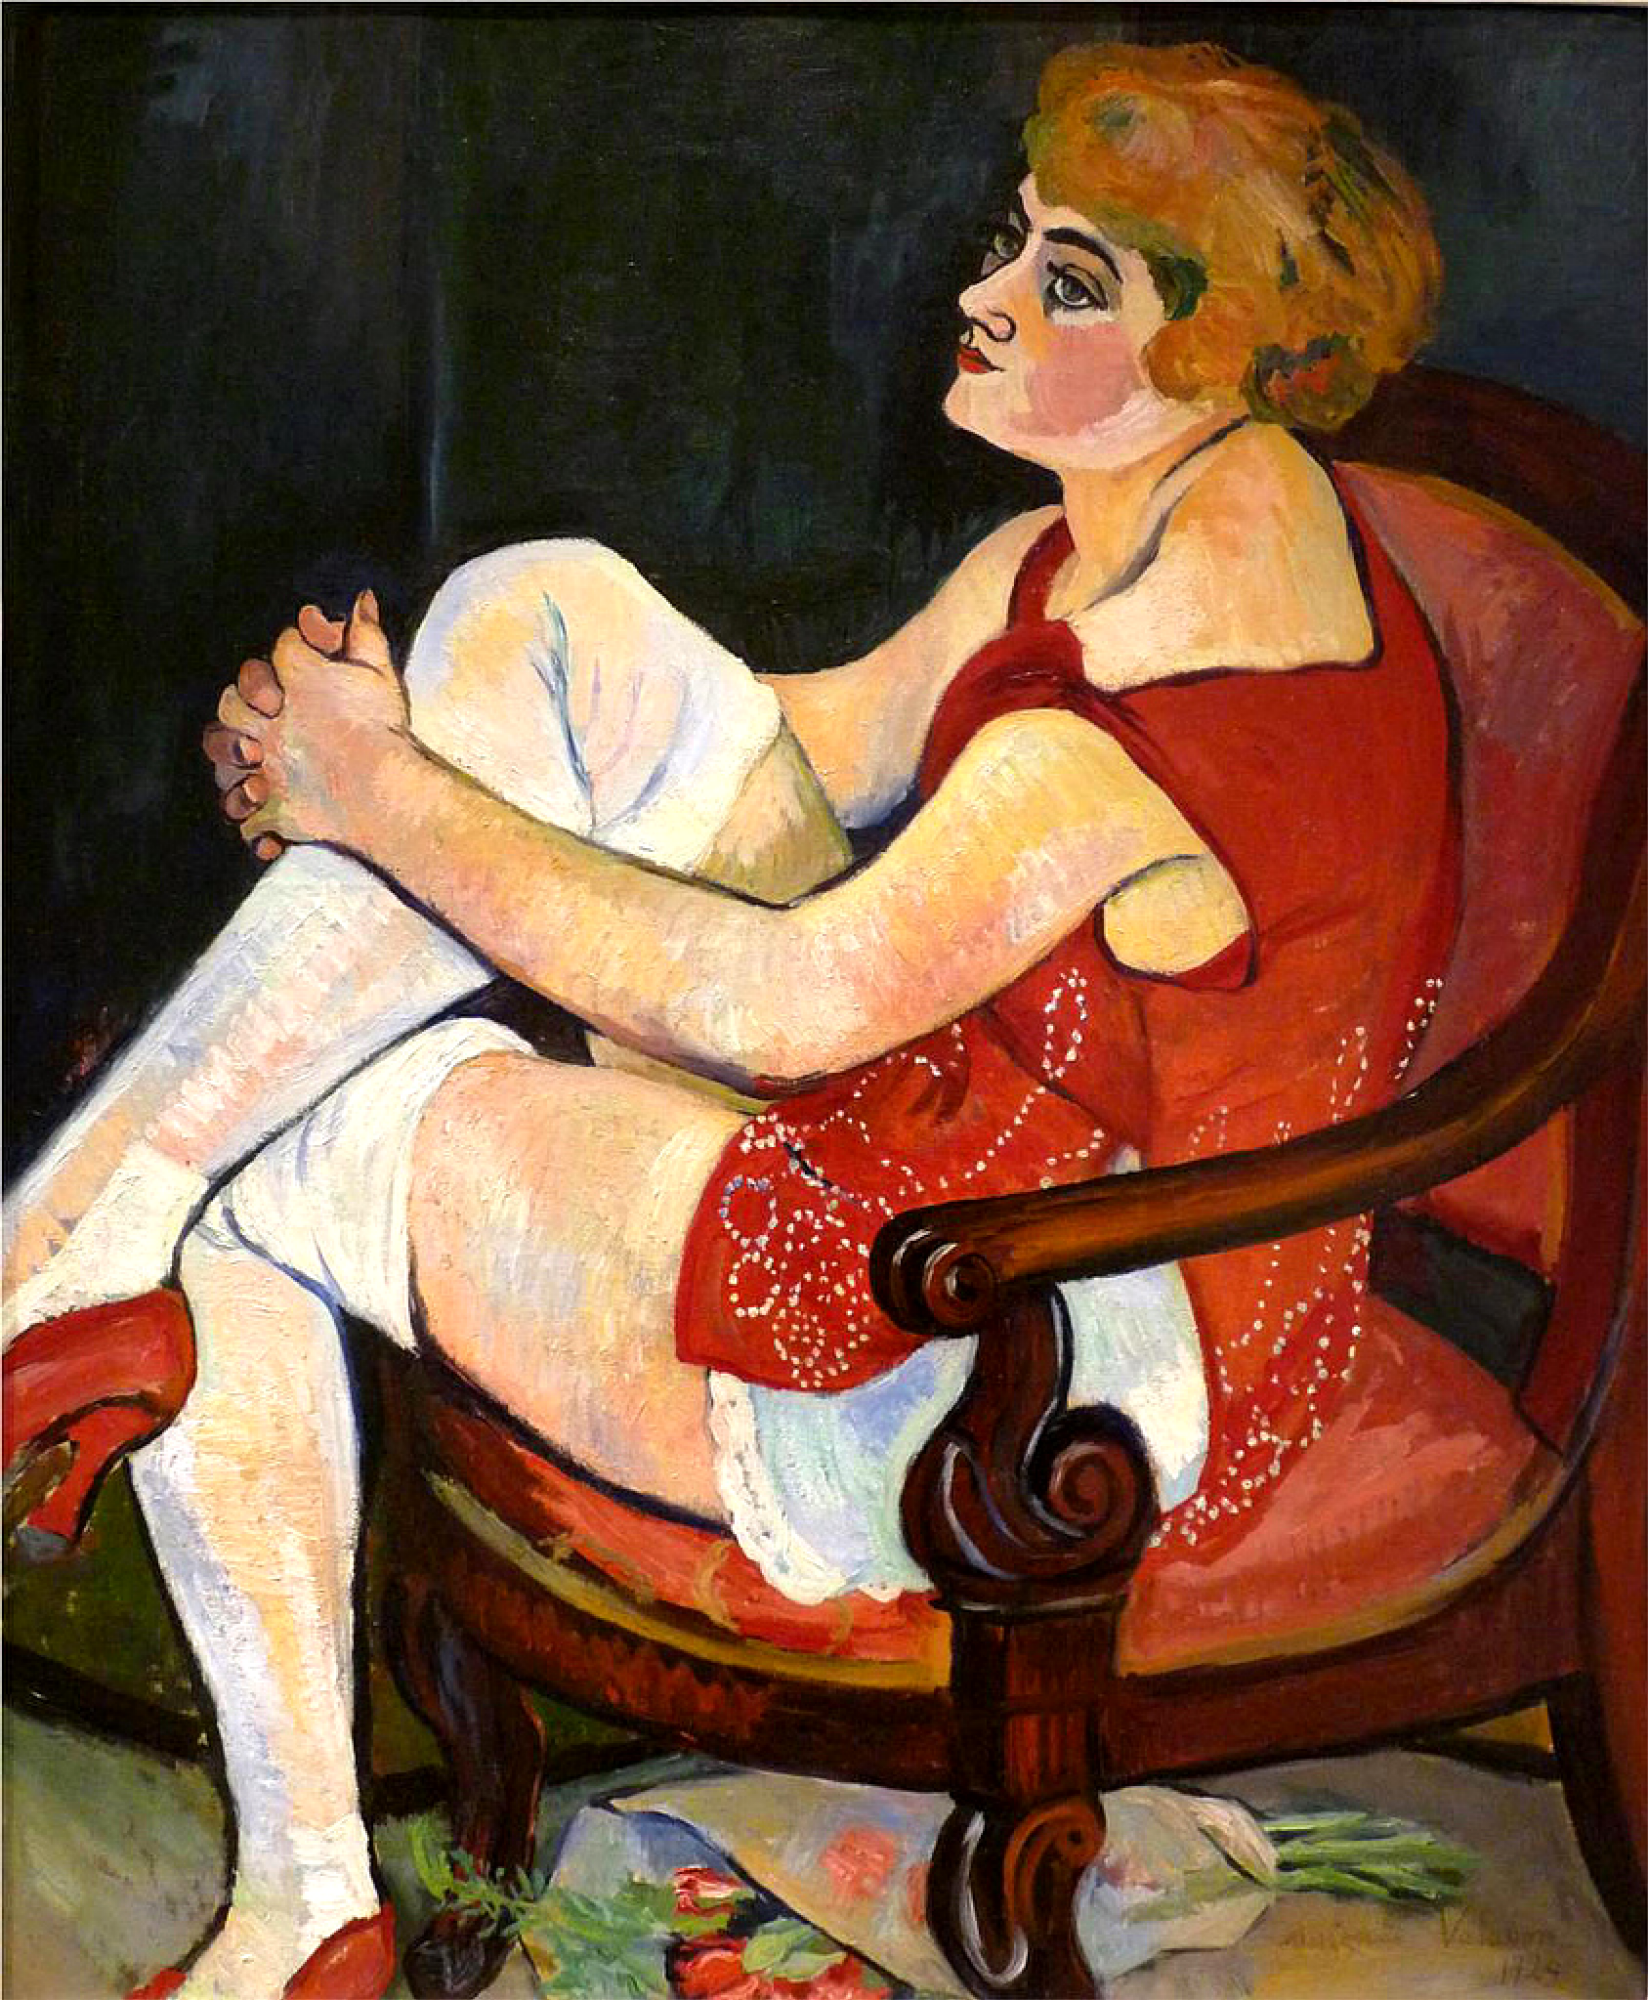 Suzanne Valadon Mujer en medias blancas, 1924, 89×117 cm